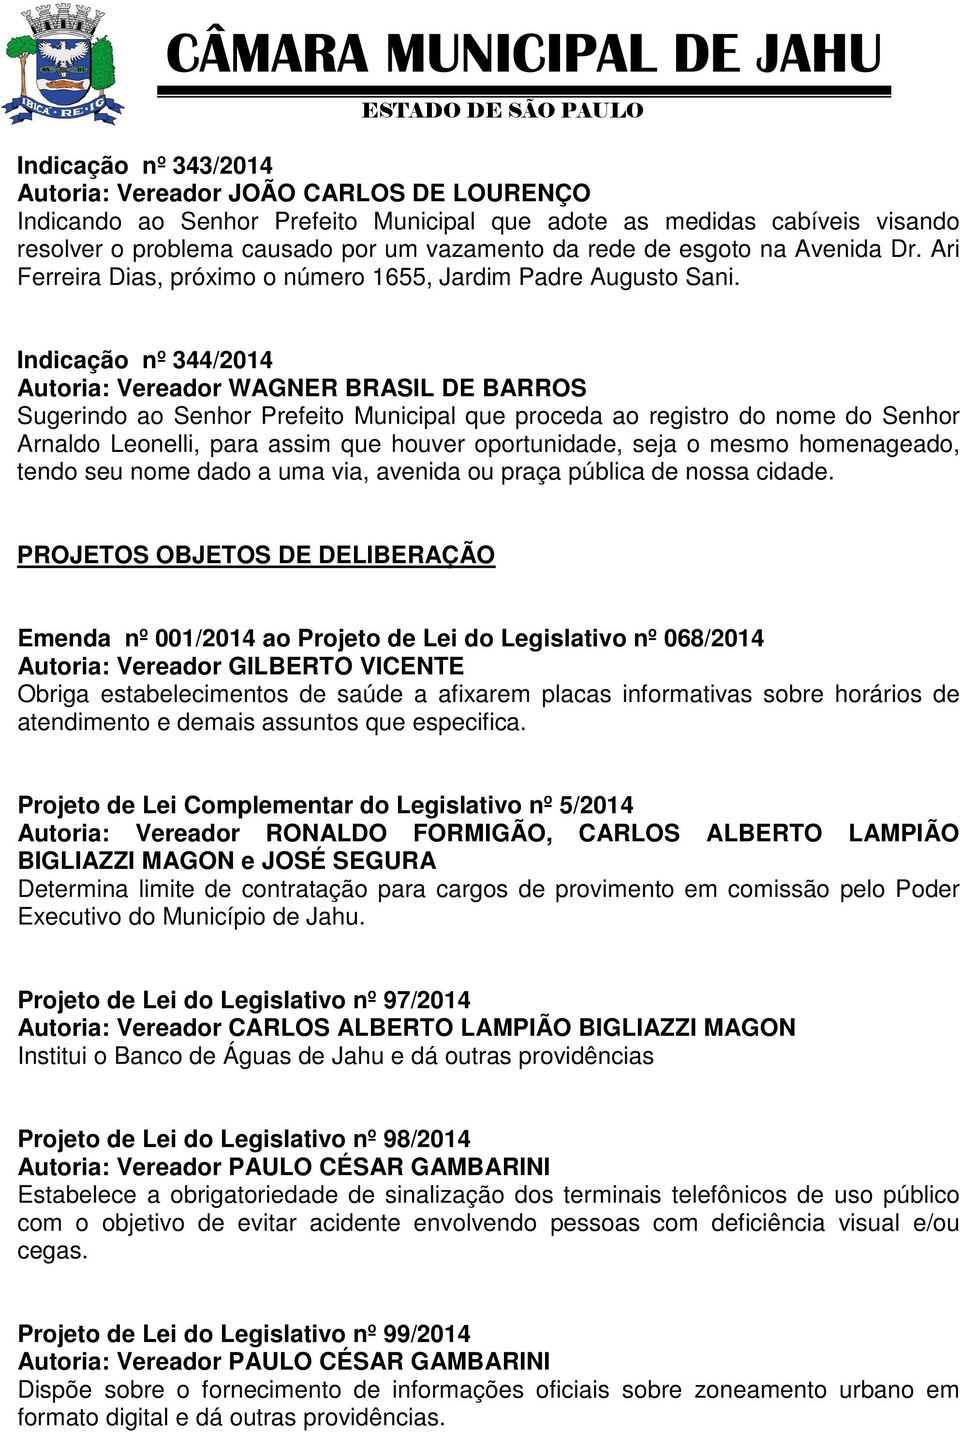 Indicação nº 344/2014 Sugerindo ao Senhor Prefeito Municipal que proceda ao registro do nome do Senhor Arnaldo Leonelli, para assim que houver oportunidade, seja o mesmo homenageado, tendo seu nome